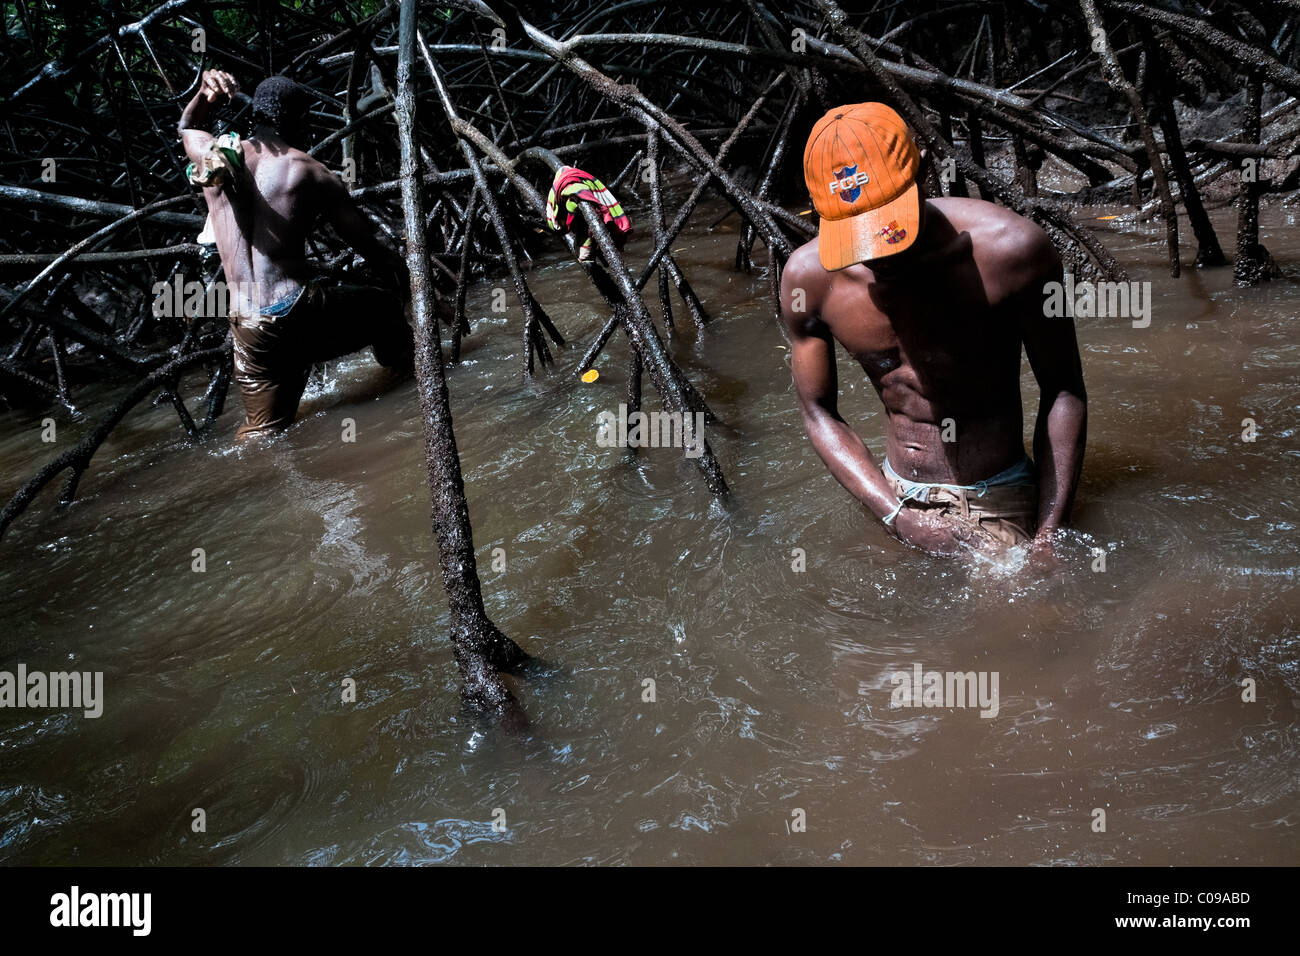 Kolumbianische jungen waschen den Schlamm aus ihren Kleidern in das schmutzige Wasser der Mangrovensümpfe an der Pazifikküste, Kolumbien. Stockfoto